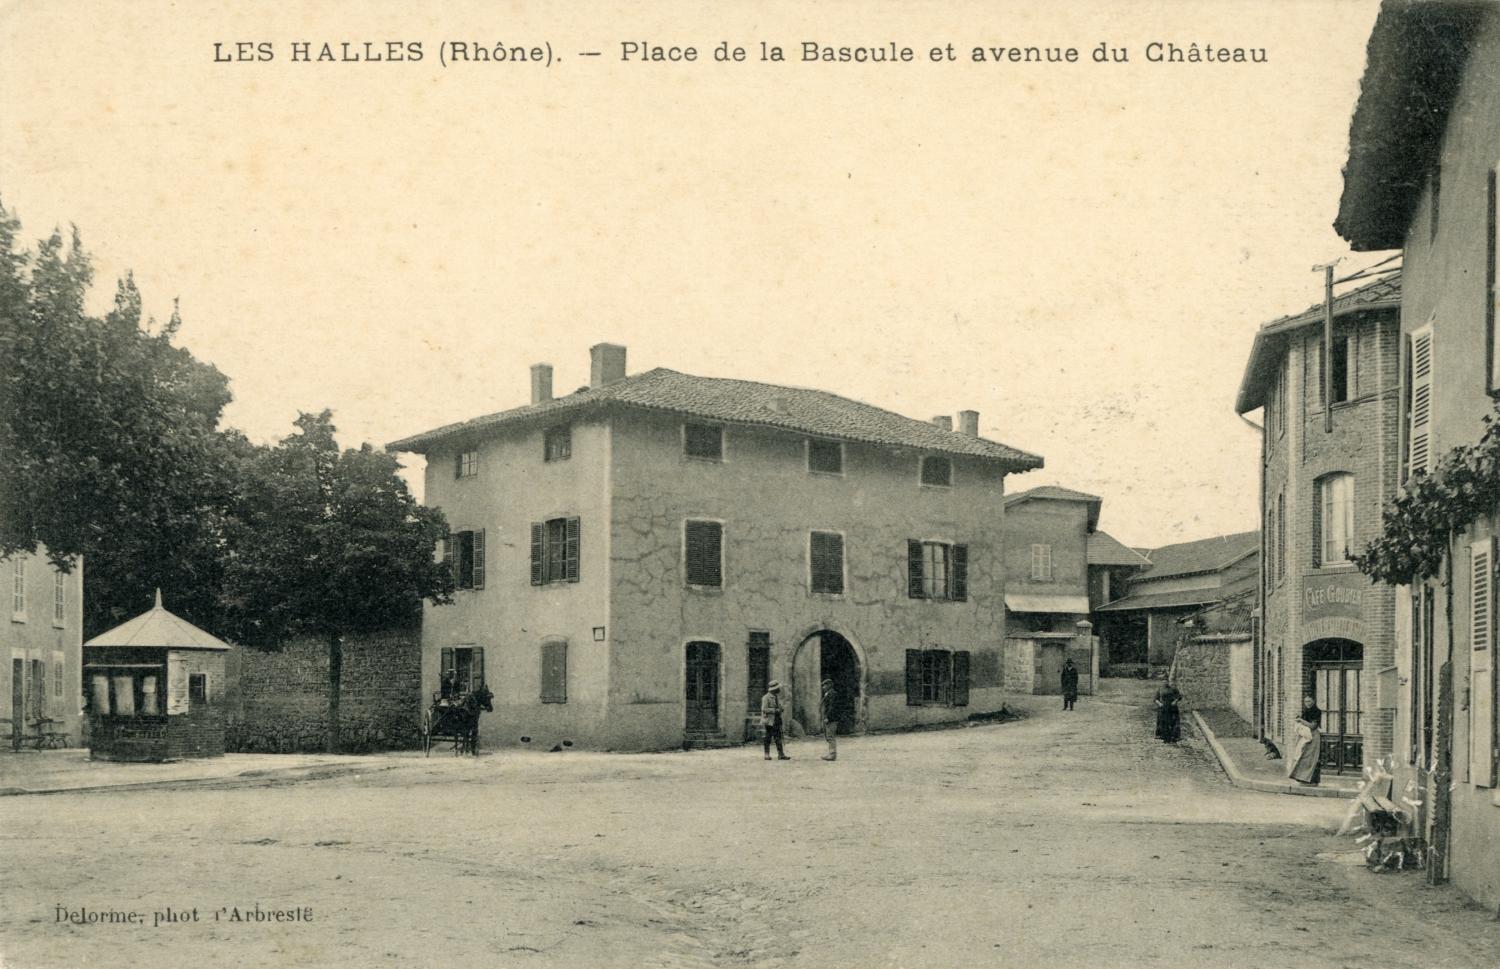 Les Halles (Rhône). - Place de la Bascule et avenue du Château